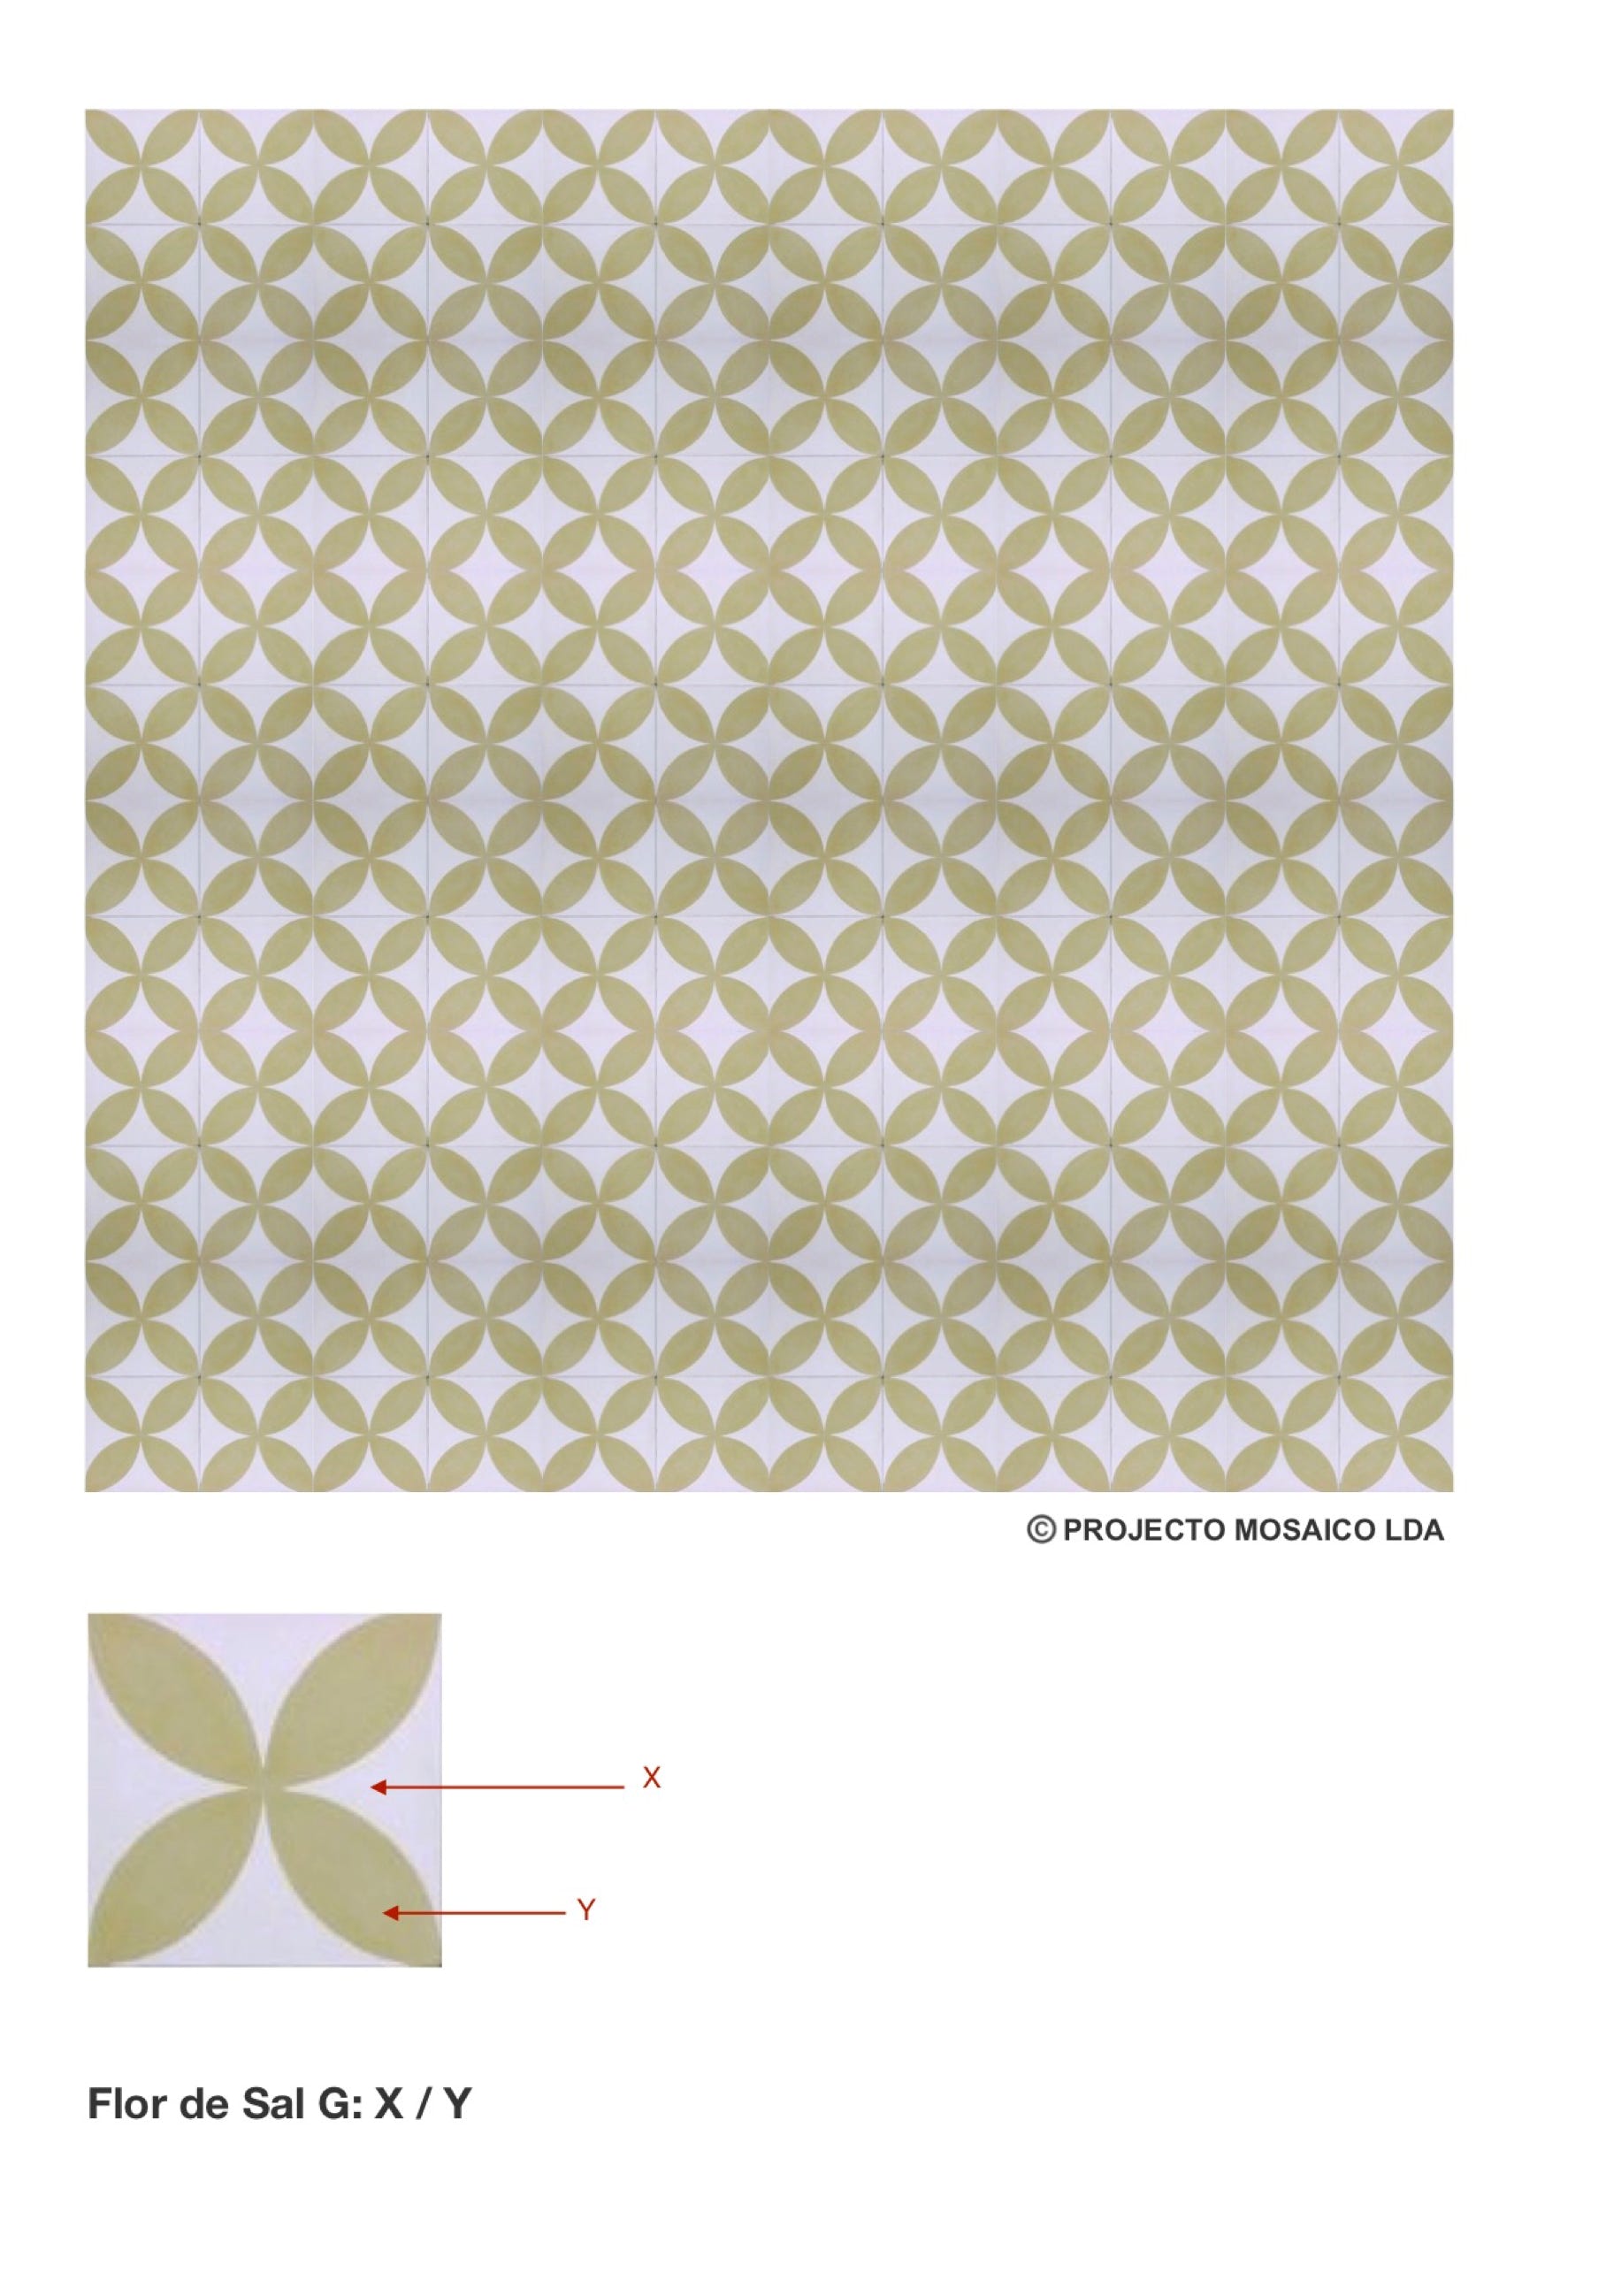 illustração de aplicação do mosaico hidráulico ref: Flor de Sal G